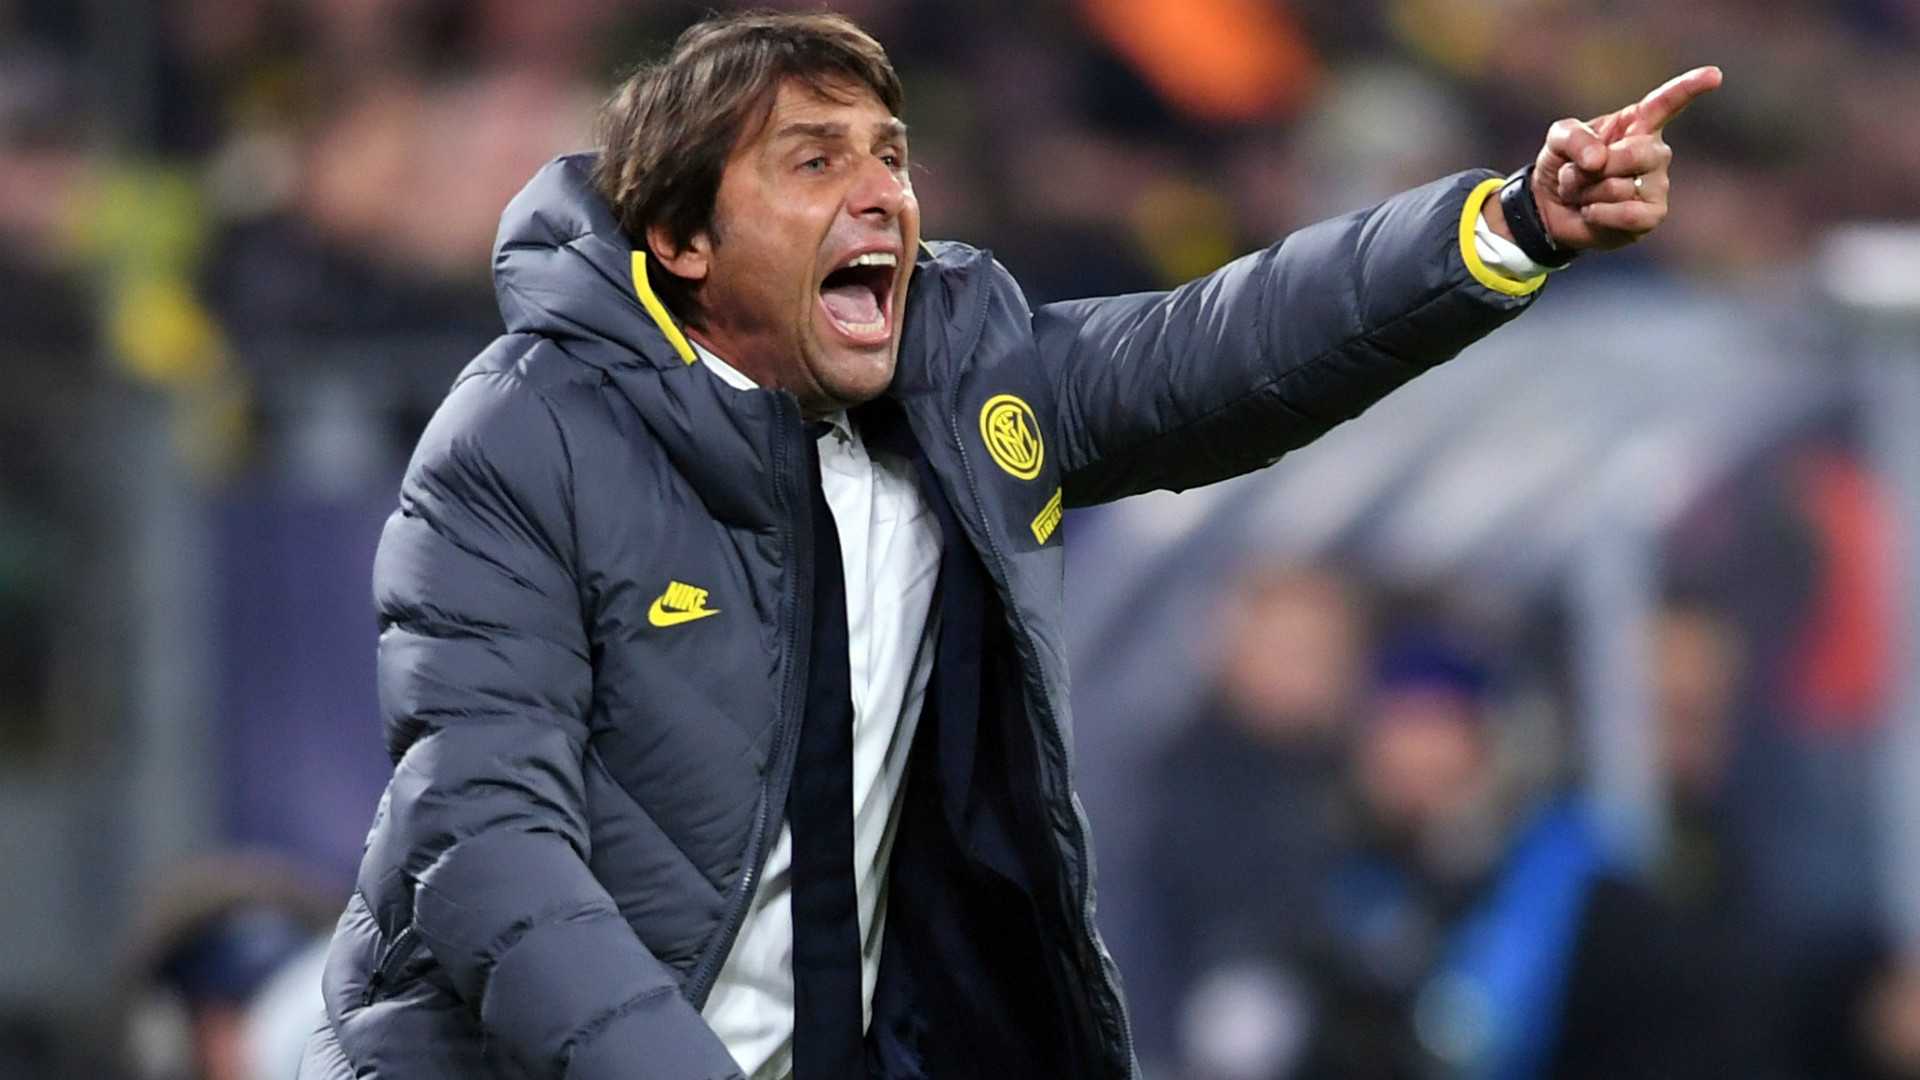 UFFICIALE - Tottenham, Antonio Conte è il nuovo tecnico